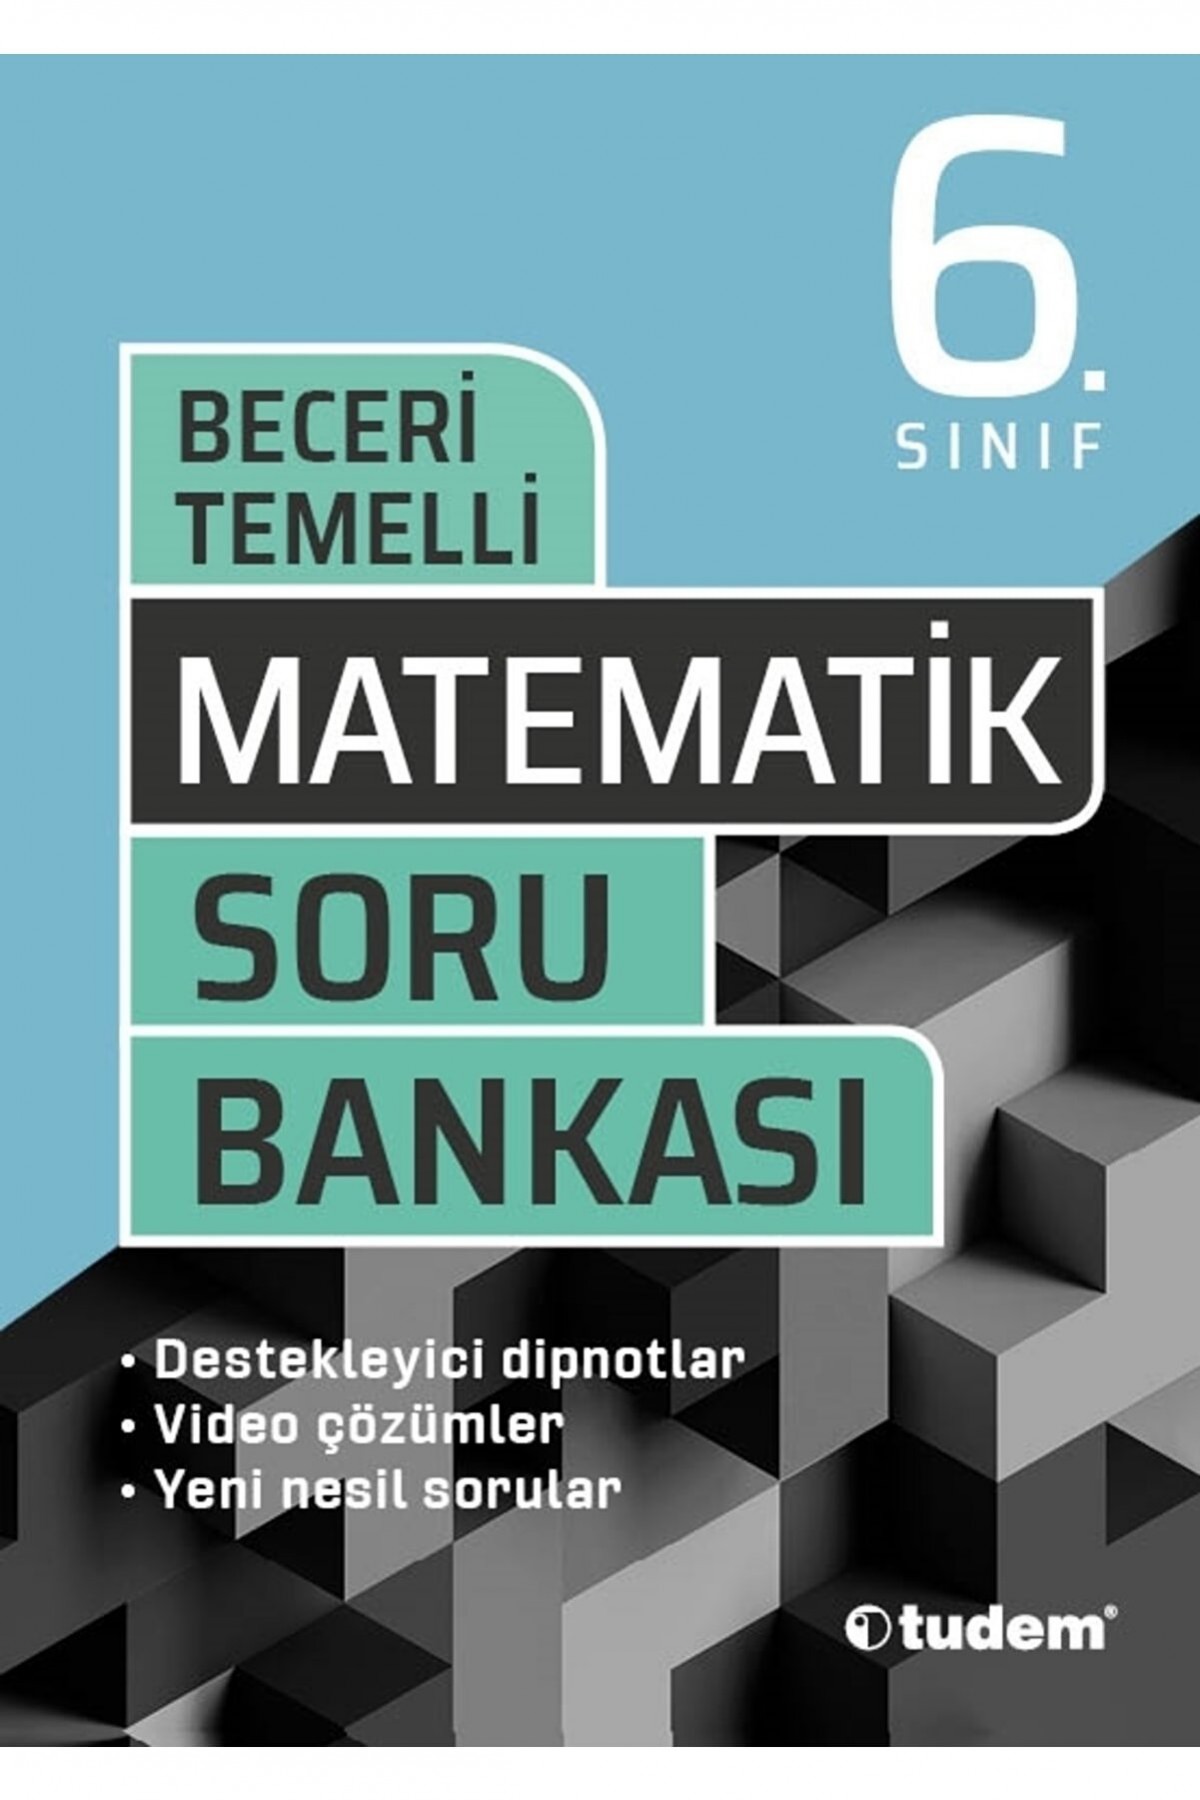 Tudem Yayınları 6. Sınıf Matematik Beceri Temelli Soru Bankası